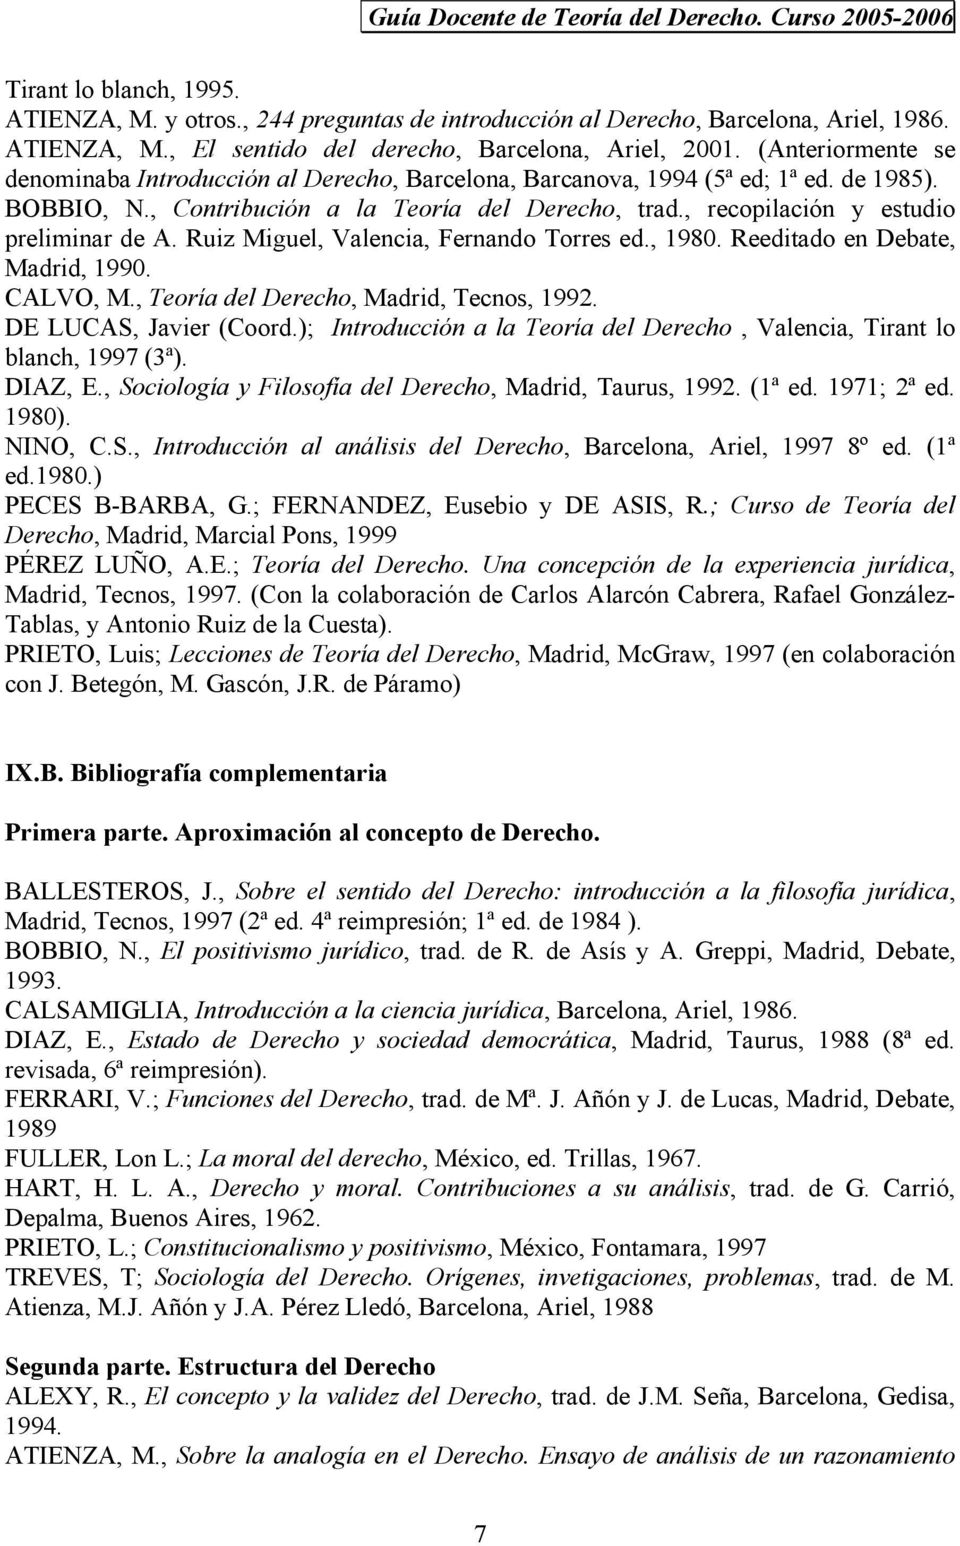 , recopilación y estudio preliminar de A. Ruiz Miguel, Valencia, Fernando Torres ed., 1980. Reeditado en Debate, Madrid, 1990. CALVO, M., Teoría del Derecho, Madrid, Tecnos, 1992.